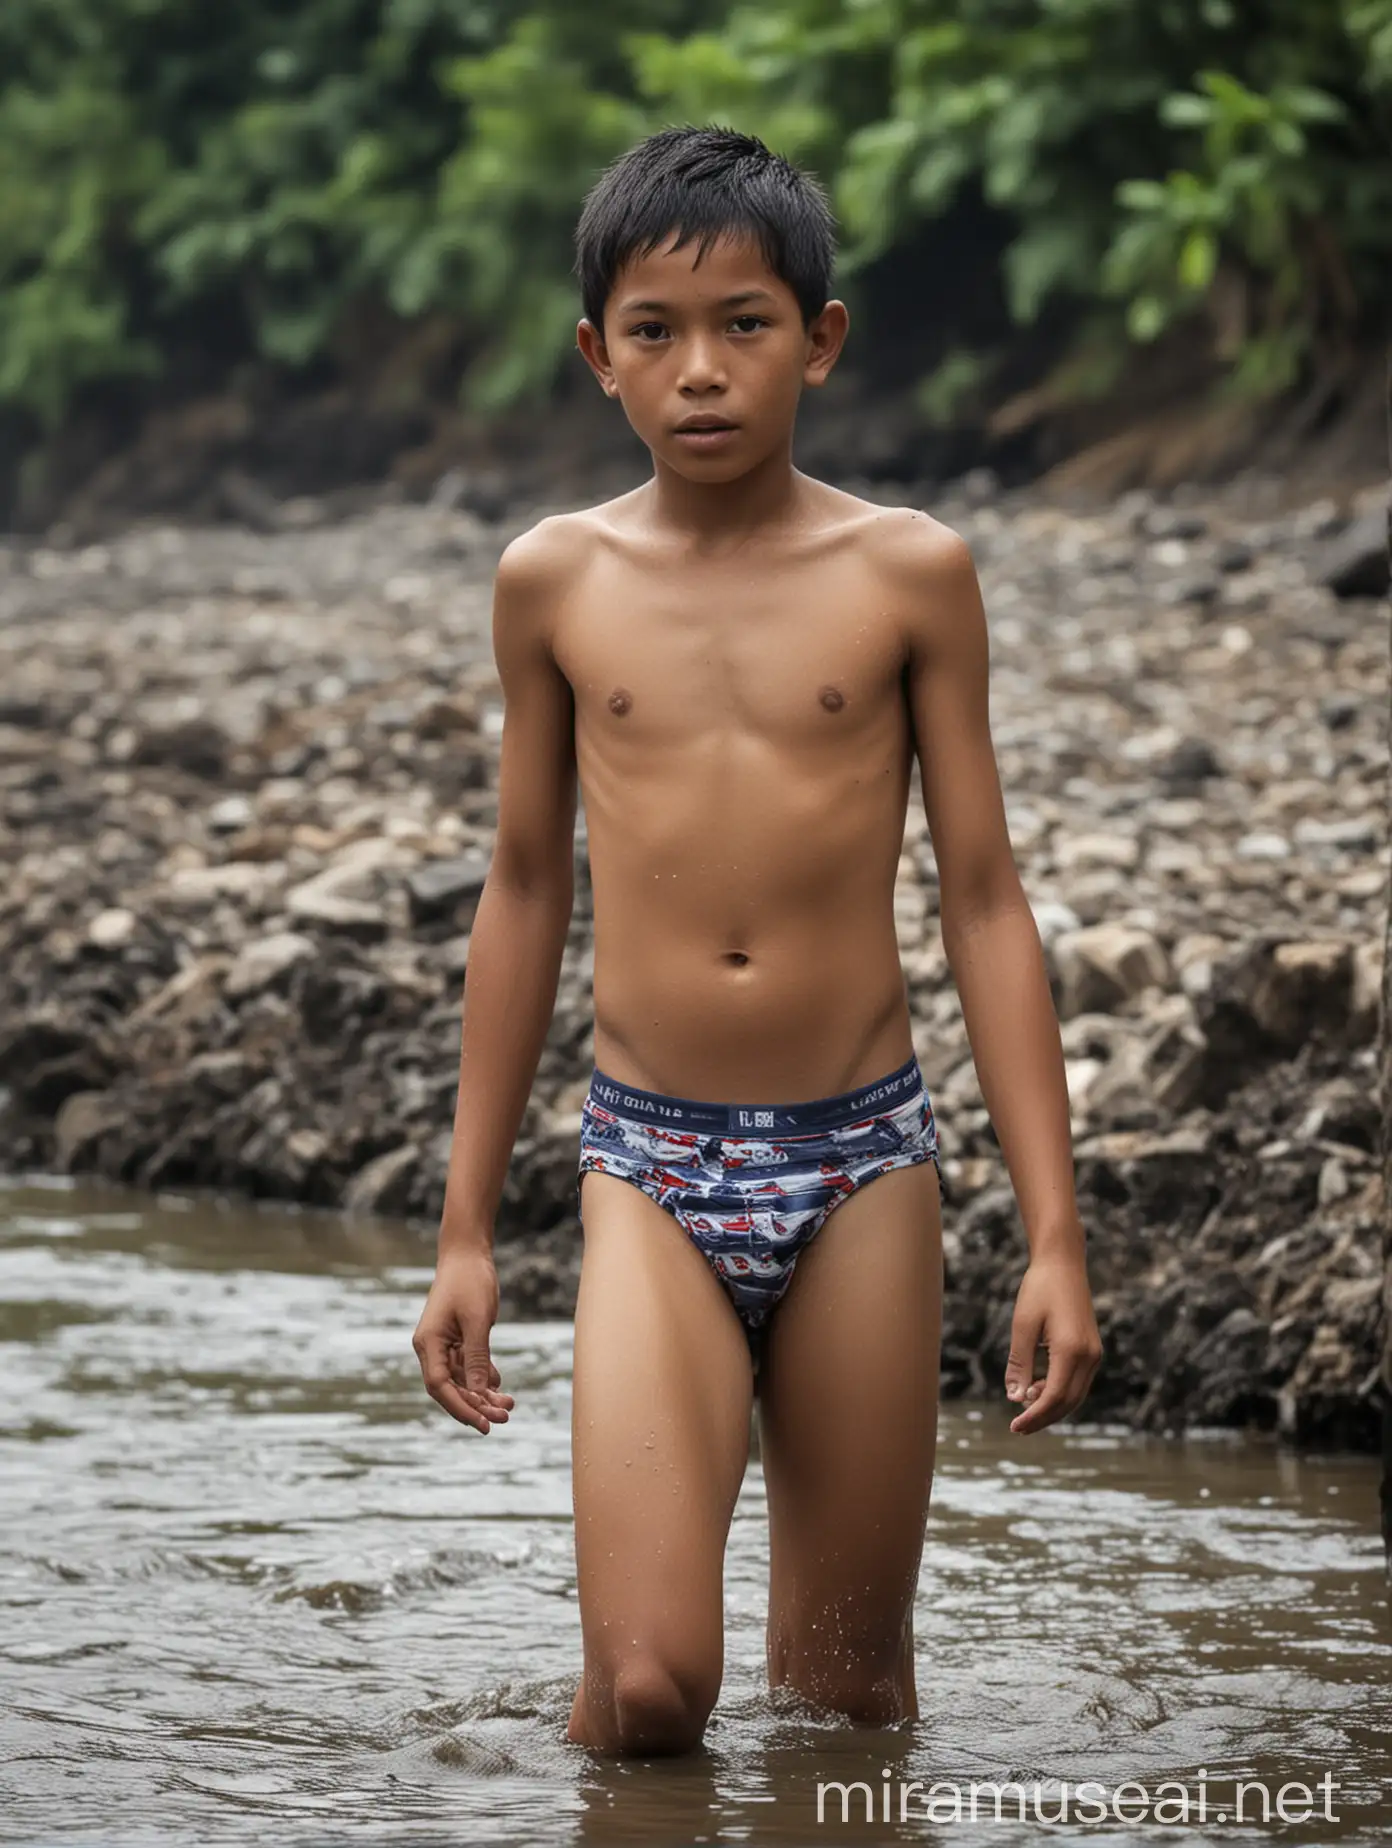 Anak Indonesia Umur 11 Tahun Laki Laki Memakai Celana Dalam di sungai